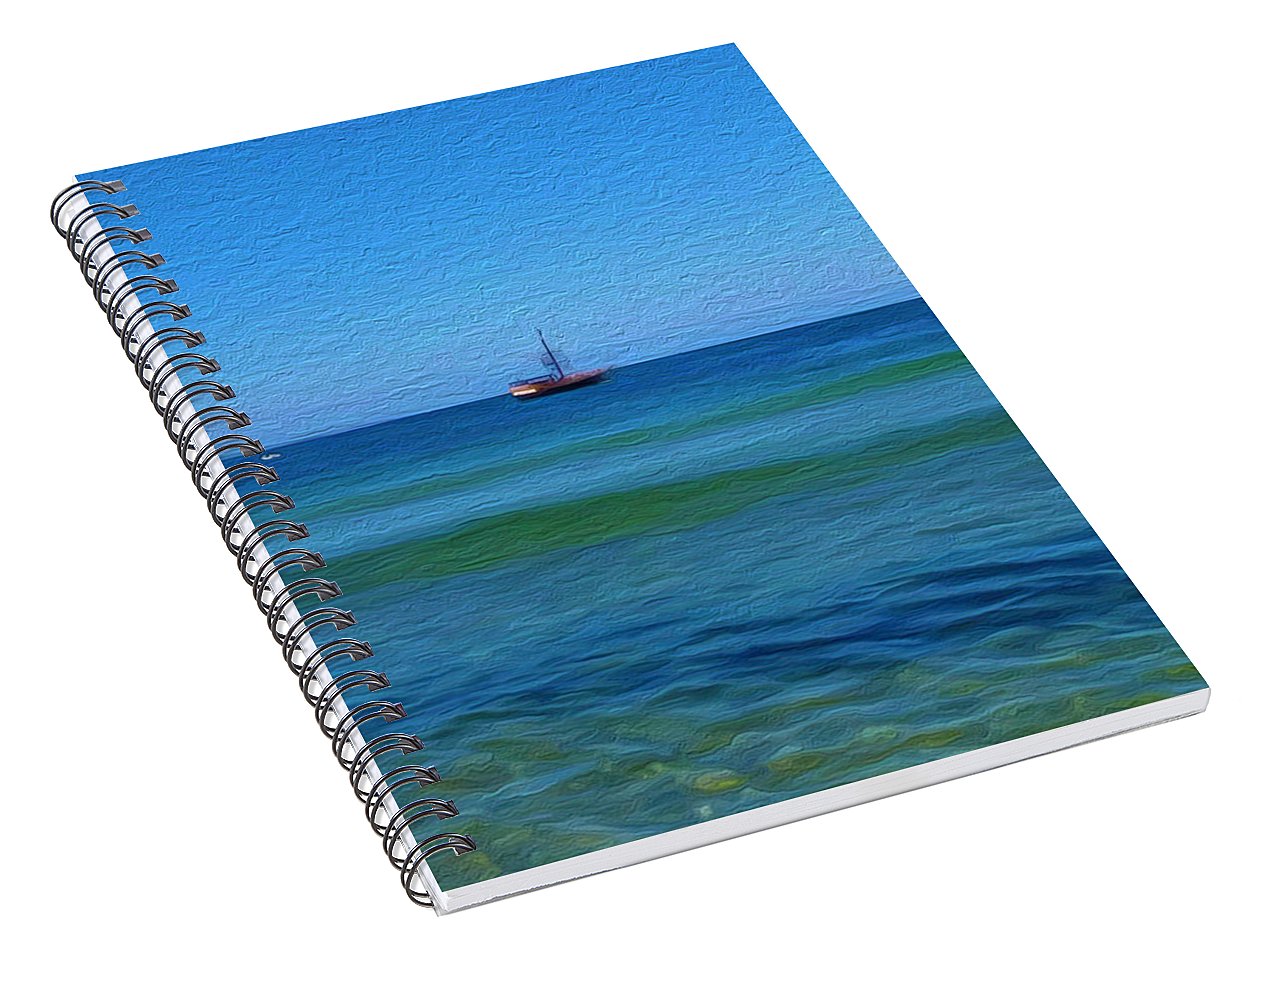 Pirate Ship, Oak Bluffs, MA - Spiral Notebook